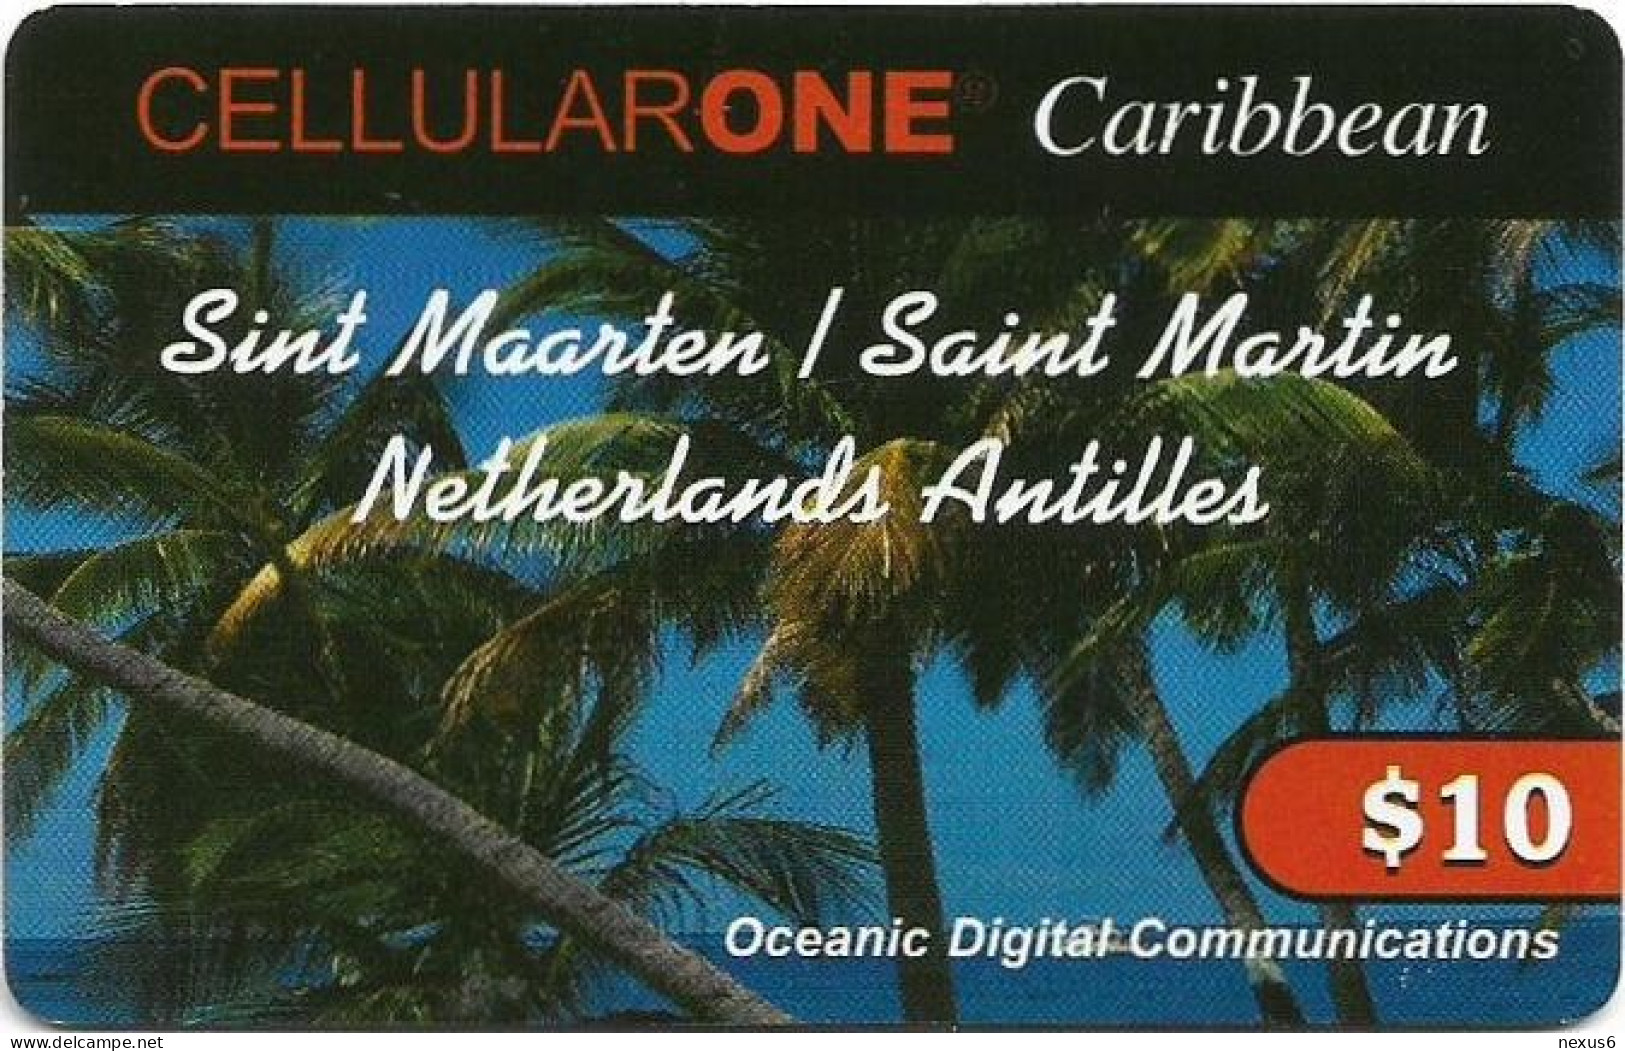 St. Maarten (Antilles Netherlands) - Cellular One Caribbean - Palm Trees (Type 2), Remote Mem. 10$, Used - Antillen (Niederländische)